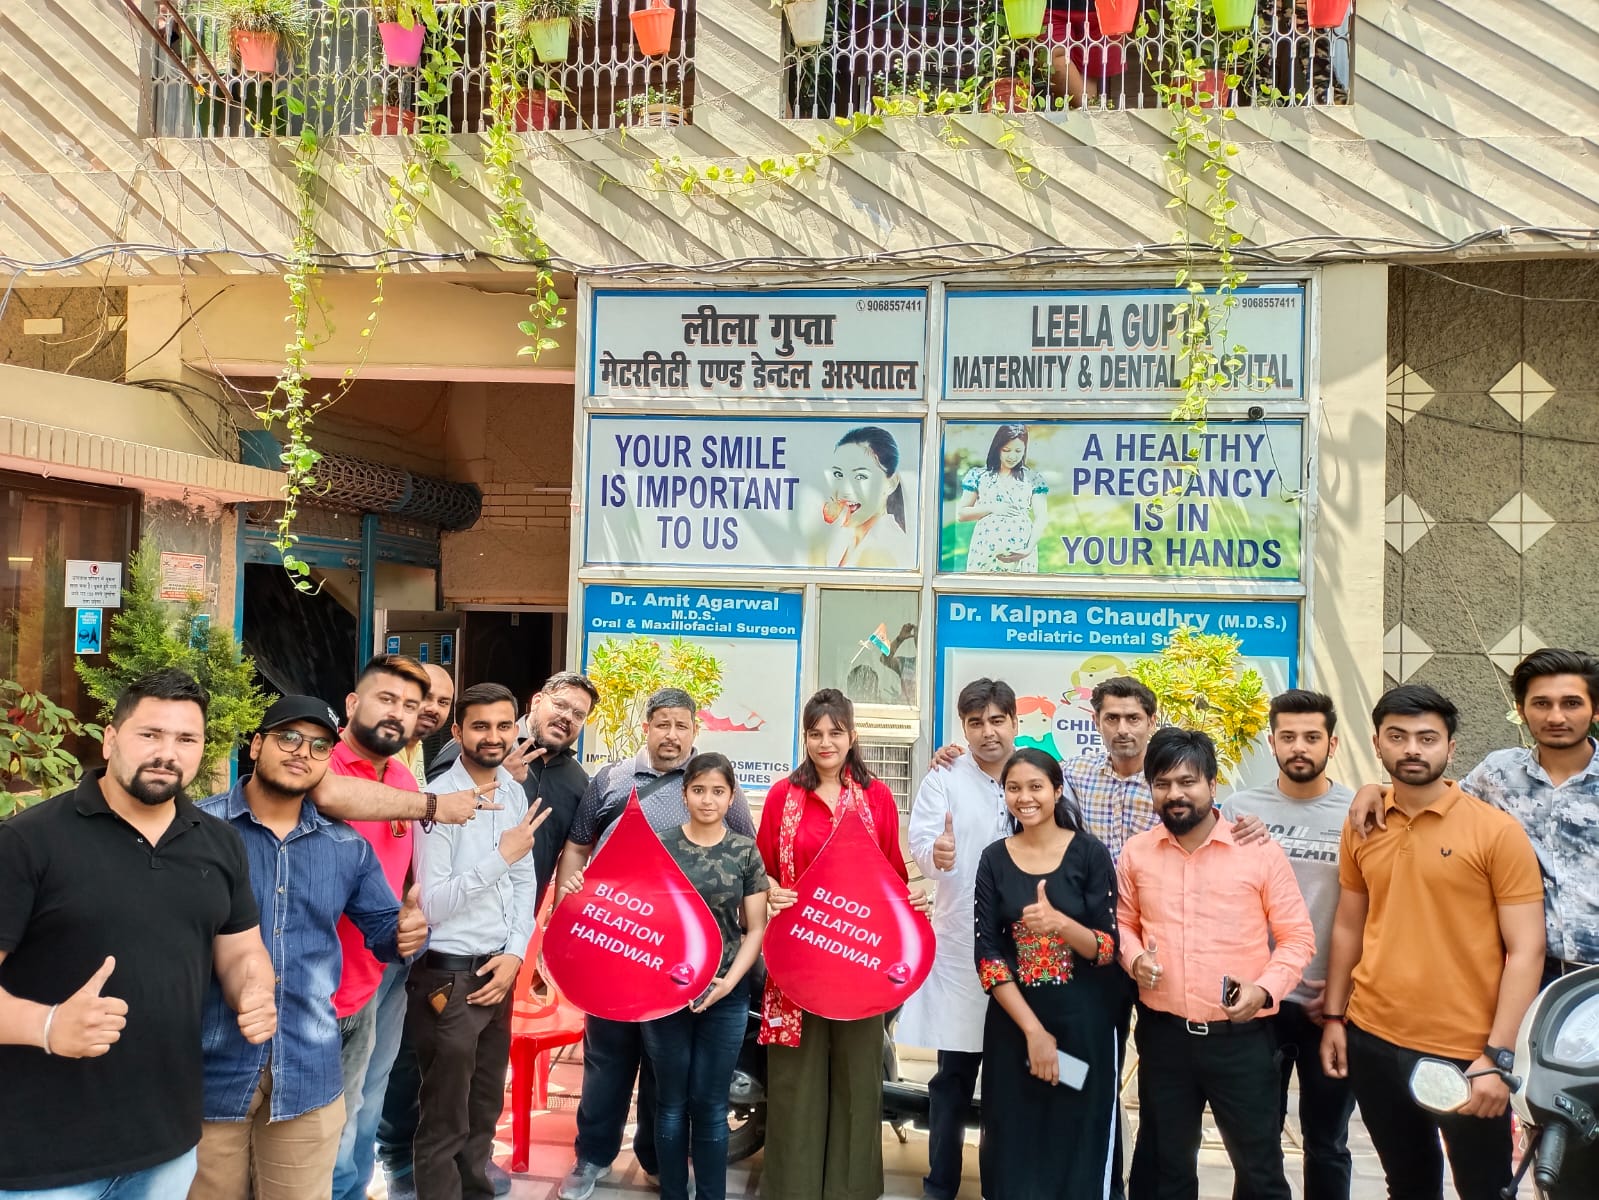 मुस्कुराहट फाउंडेशन एवं ब्लड रिलेशन टीम हरिद्वार के द्वारा लीला गुप्ता हॉस्पिटल, ज्वालापुर में आयोजित हुआ ब्लड कैंप